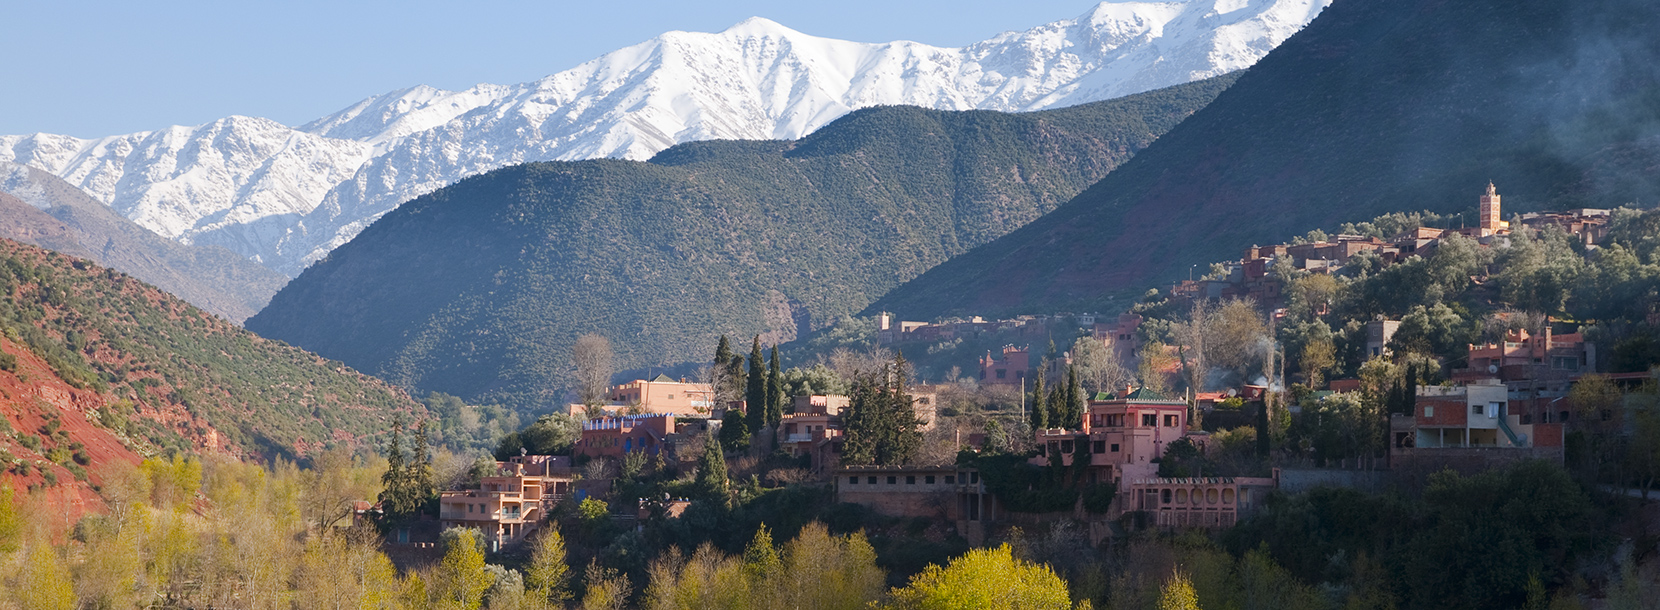 Les montagnes de l'Atlas à Marrakech